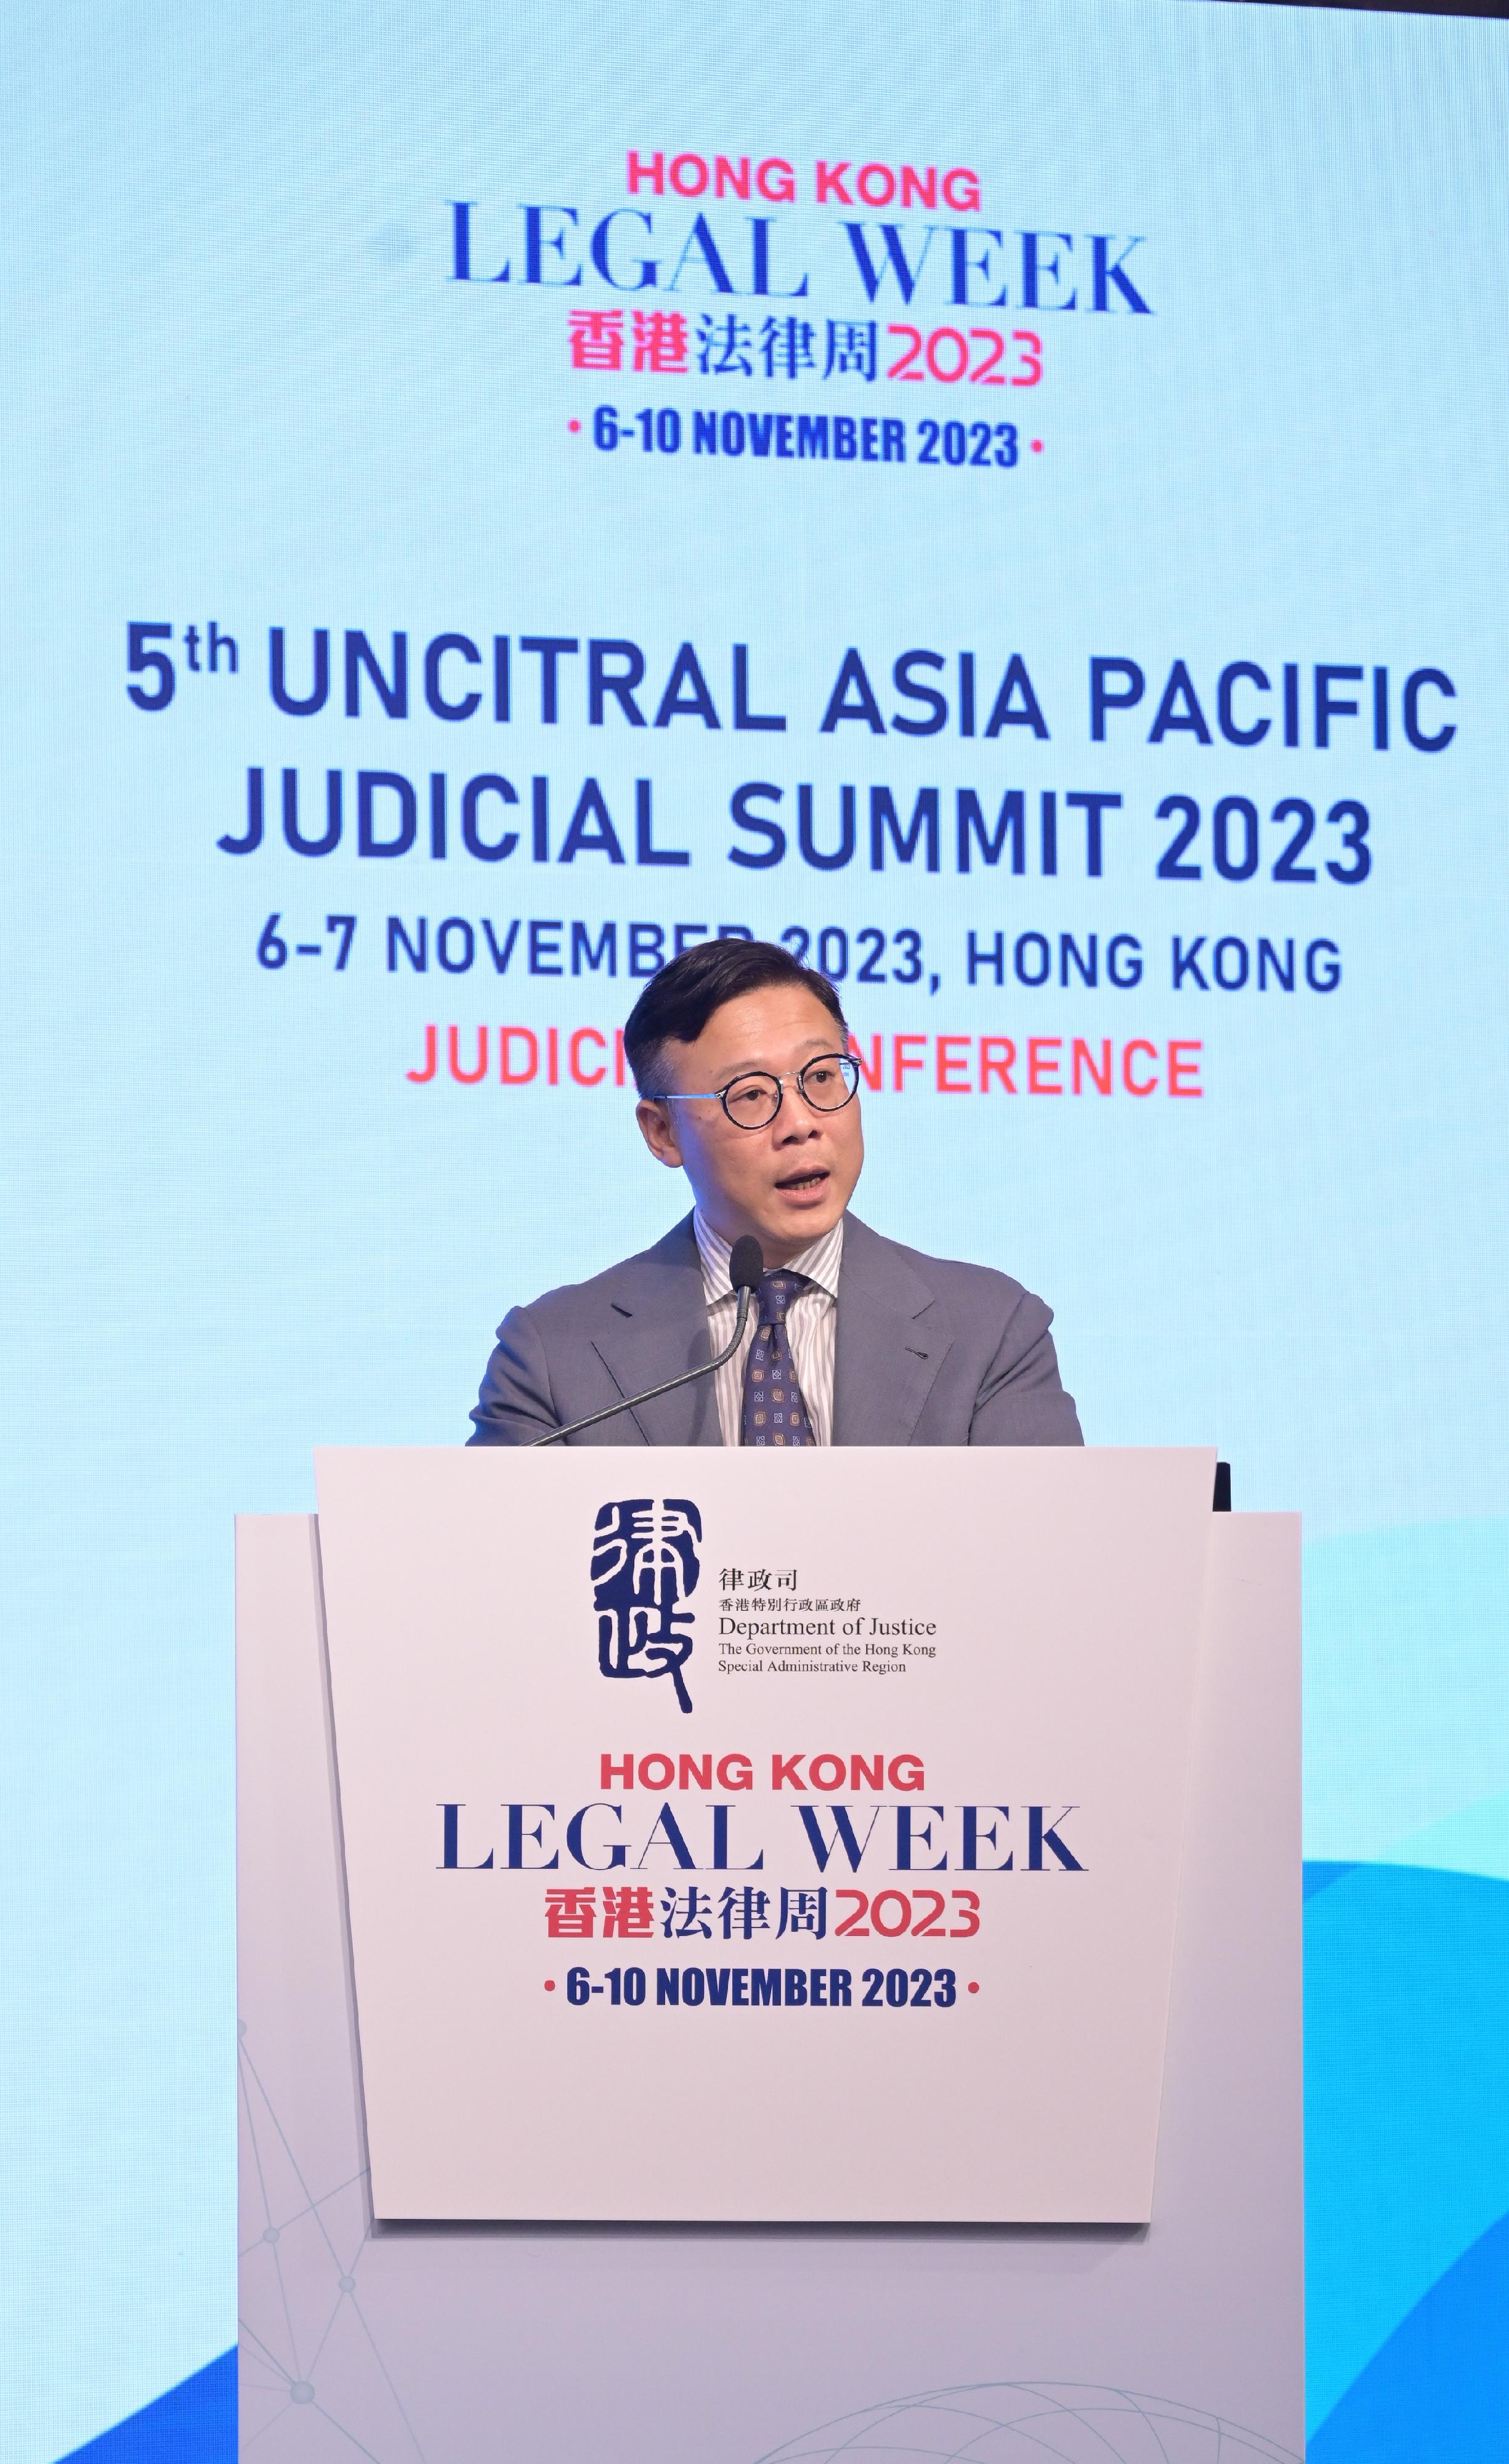 律政司副司长张国钧今日（十一月六日）在香港法律周2023—第五届联合国国际贸易法委员会亚太司法高峰会——司法会议致闭幕辞。

